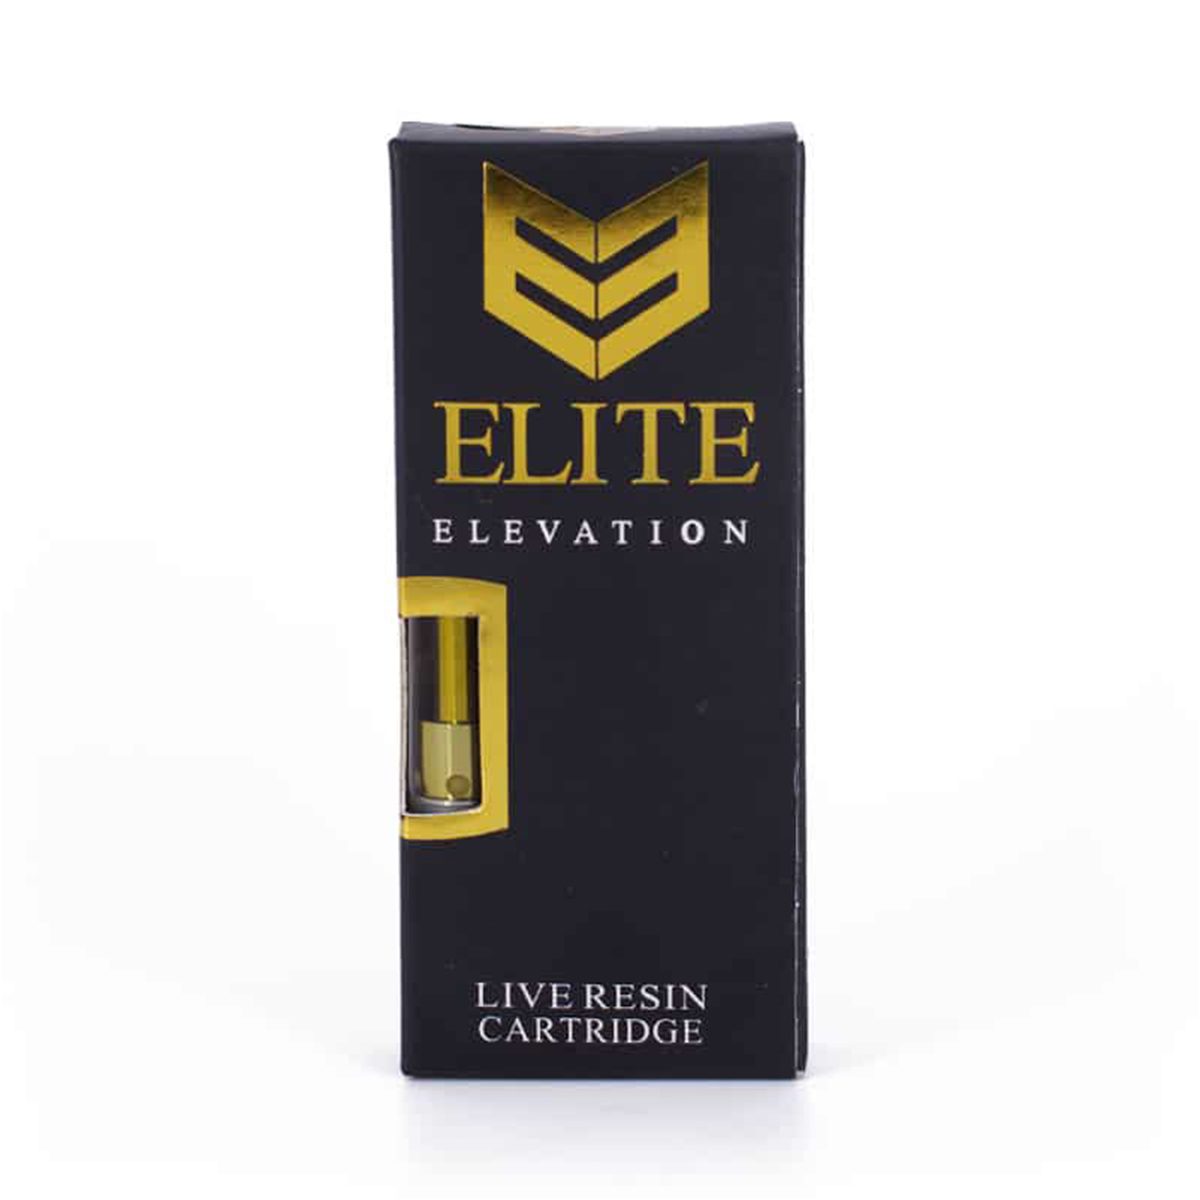 buy elite elevation cartridge